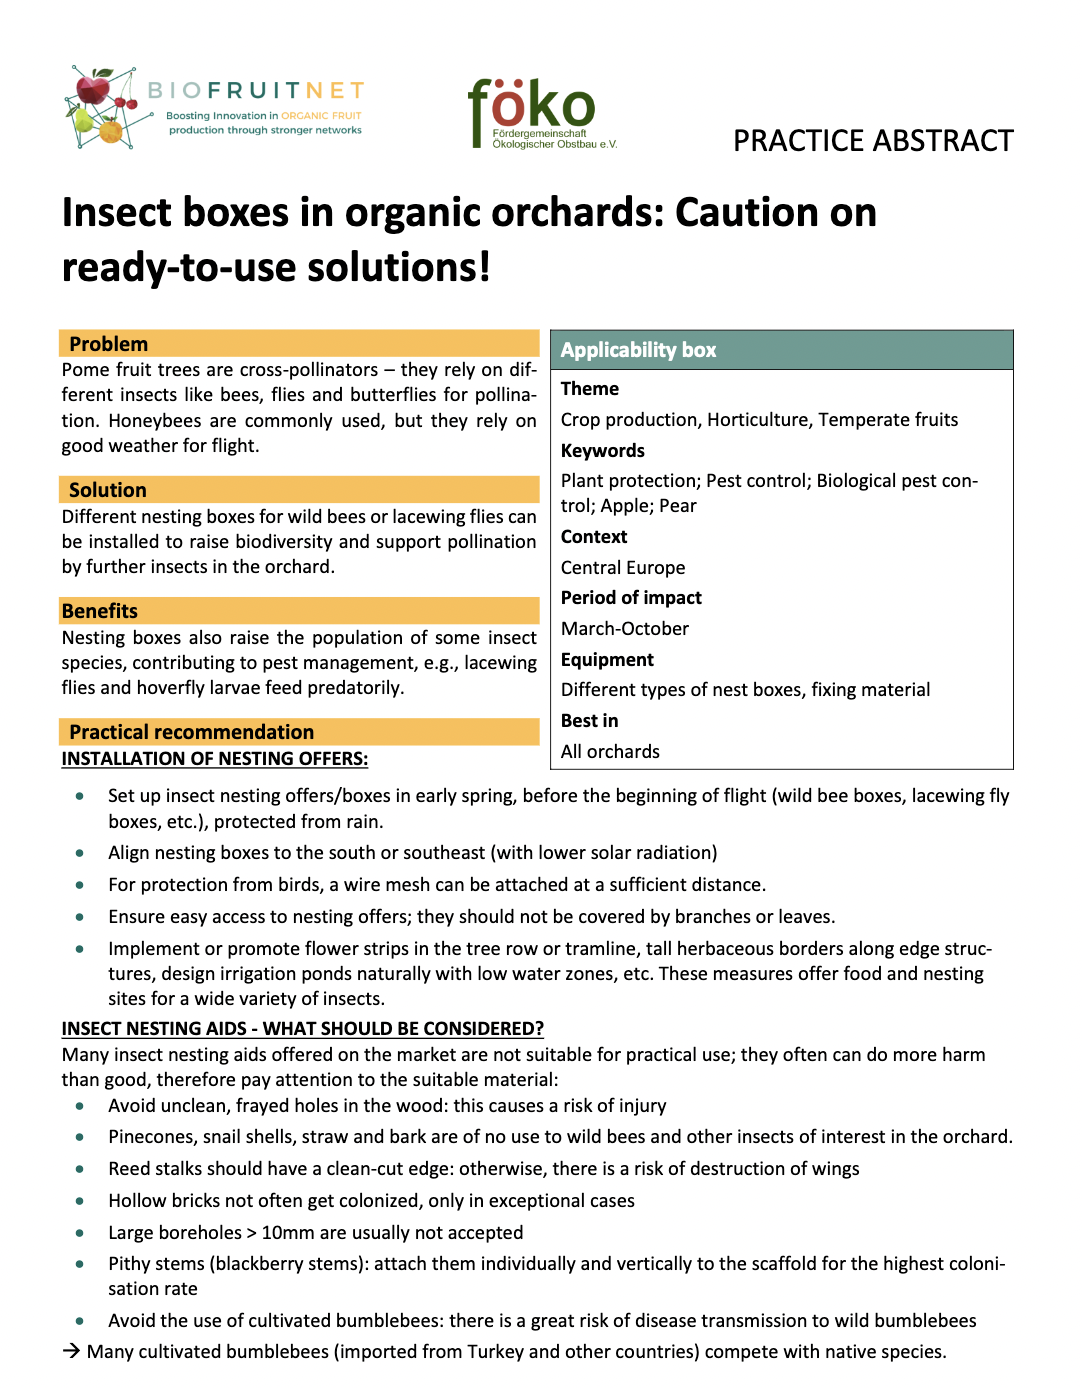 Кутије за инсекте у органским воћњацима: Опрез на растворе који су спремни за употребу! (БИОФРУИТНЕТ Працтице Абстрацт)